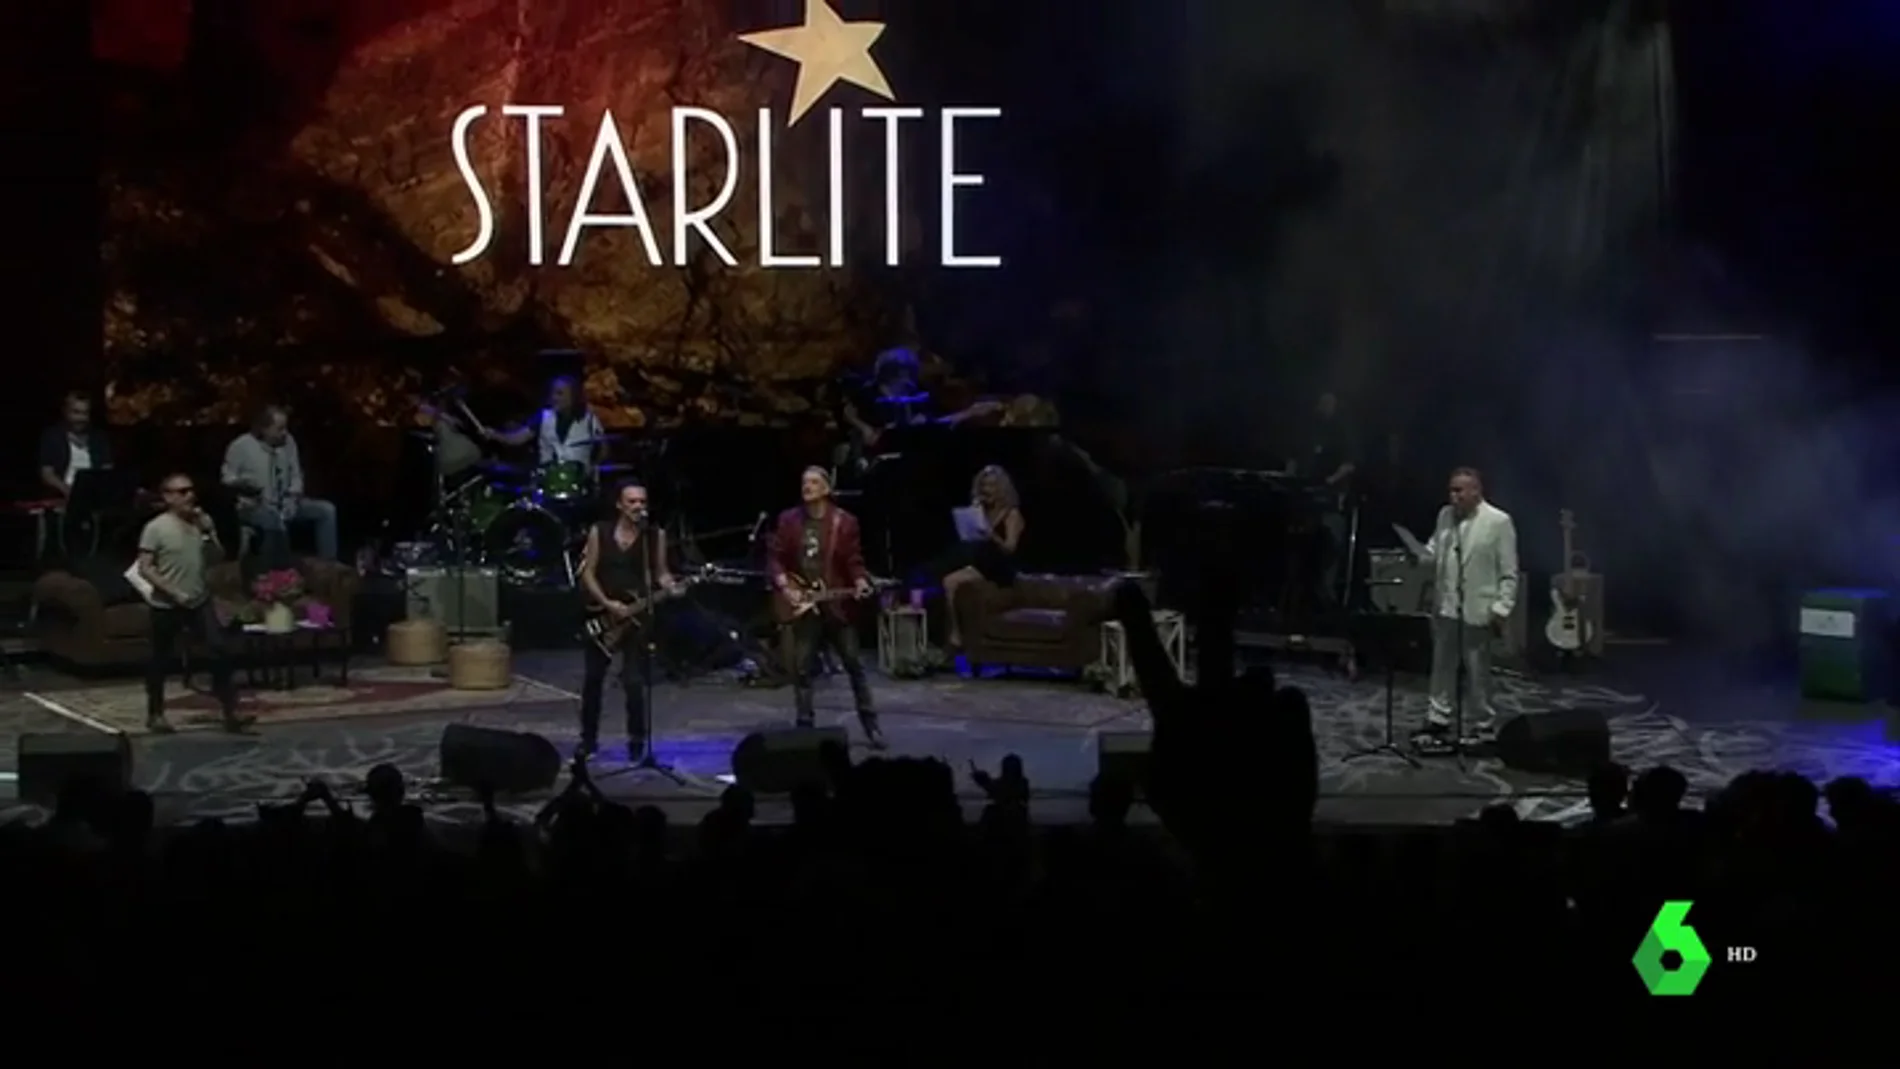 Marbella regresa a los 80, o la noche que el 'Starlite' nos devolvió nuestra 'movida' historia de la música